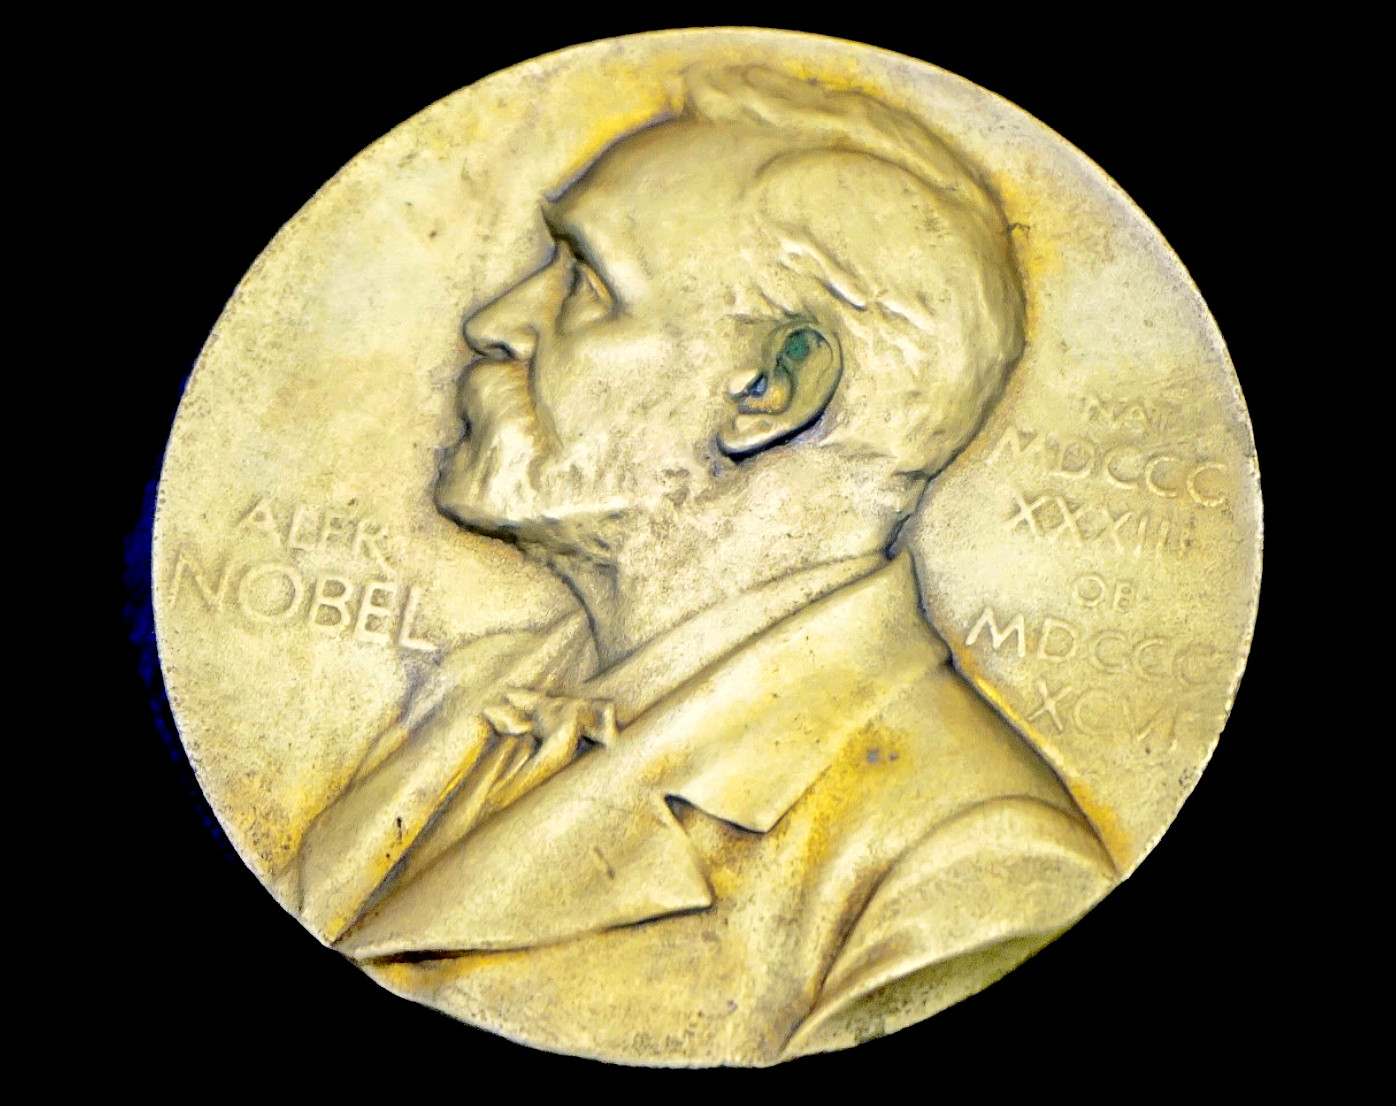 诺贝尔奖奖章。图/unsplash